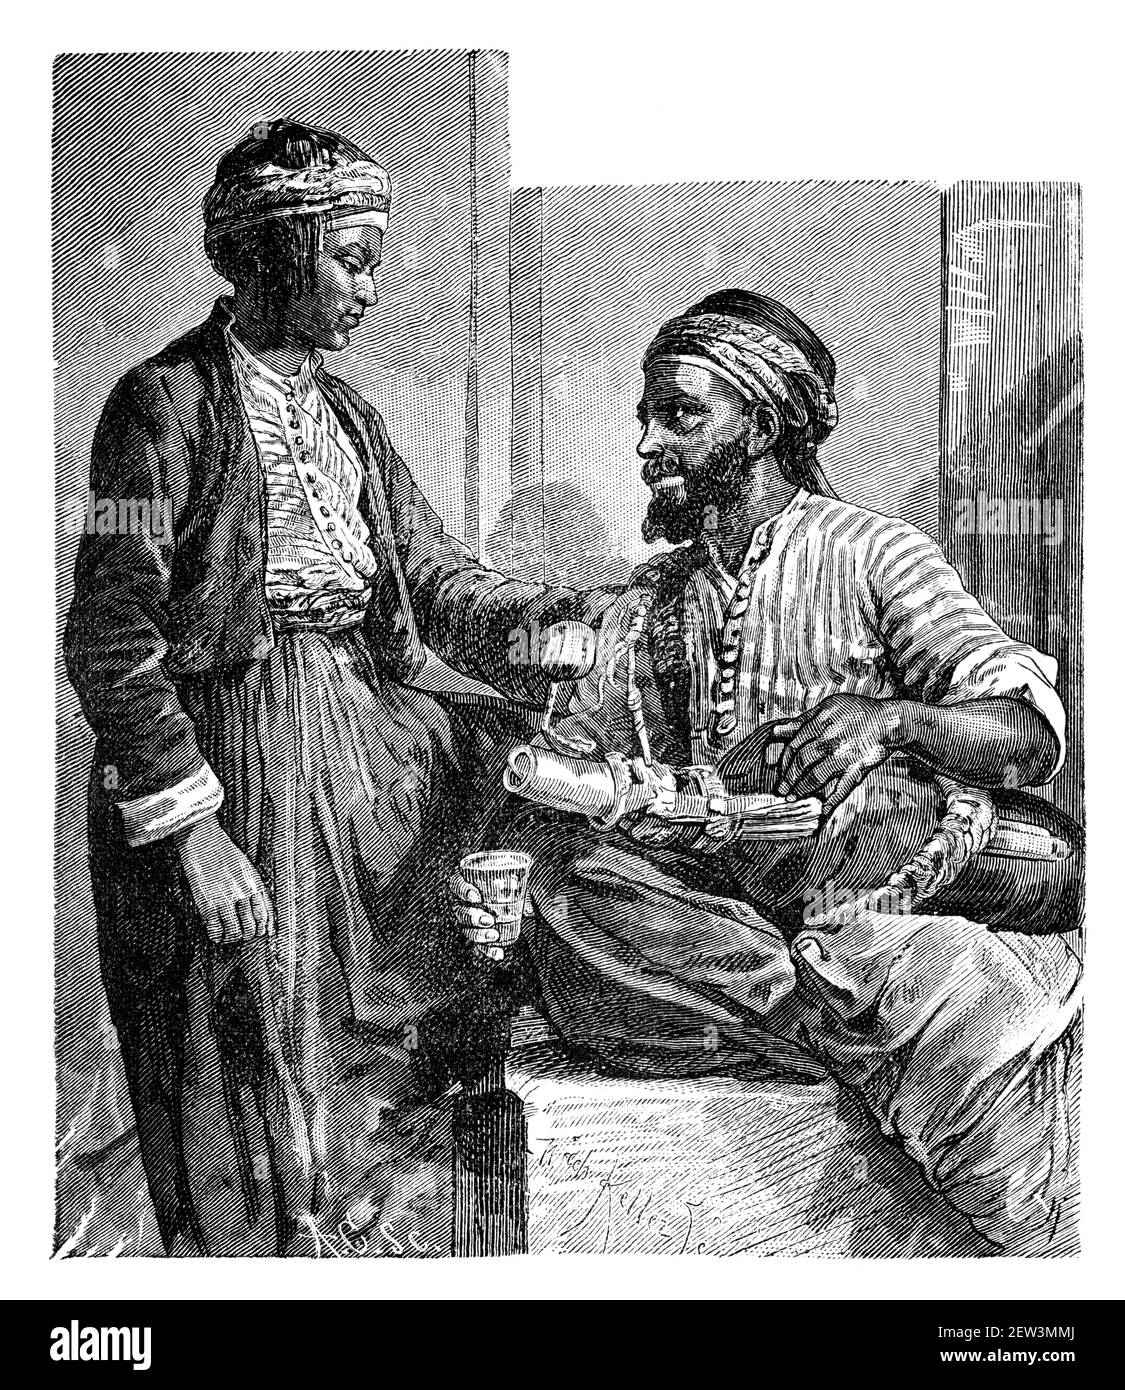 Limonata venditore di strada, il Cairo, Egitto. Cultura e storia del Nord Africa. Immagine in bianco e nero d'epoca. 19 ° secolo. Foto Stock